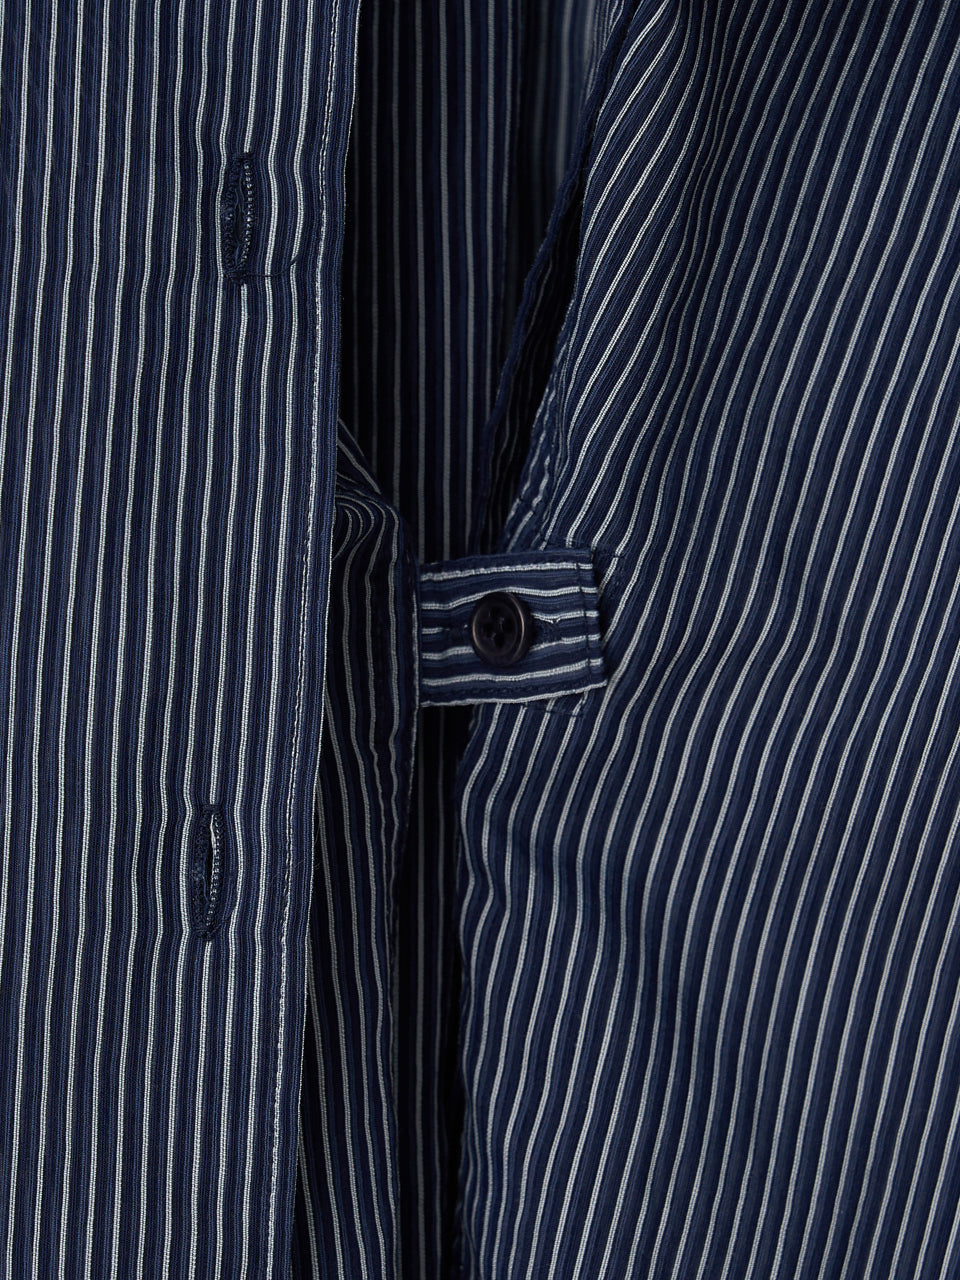 Stripe Shirt (Blue Stripe)